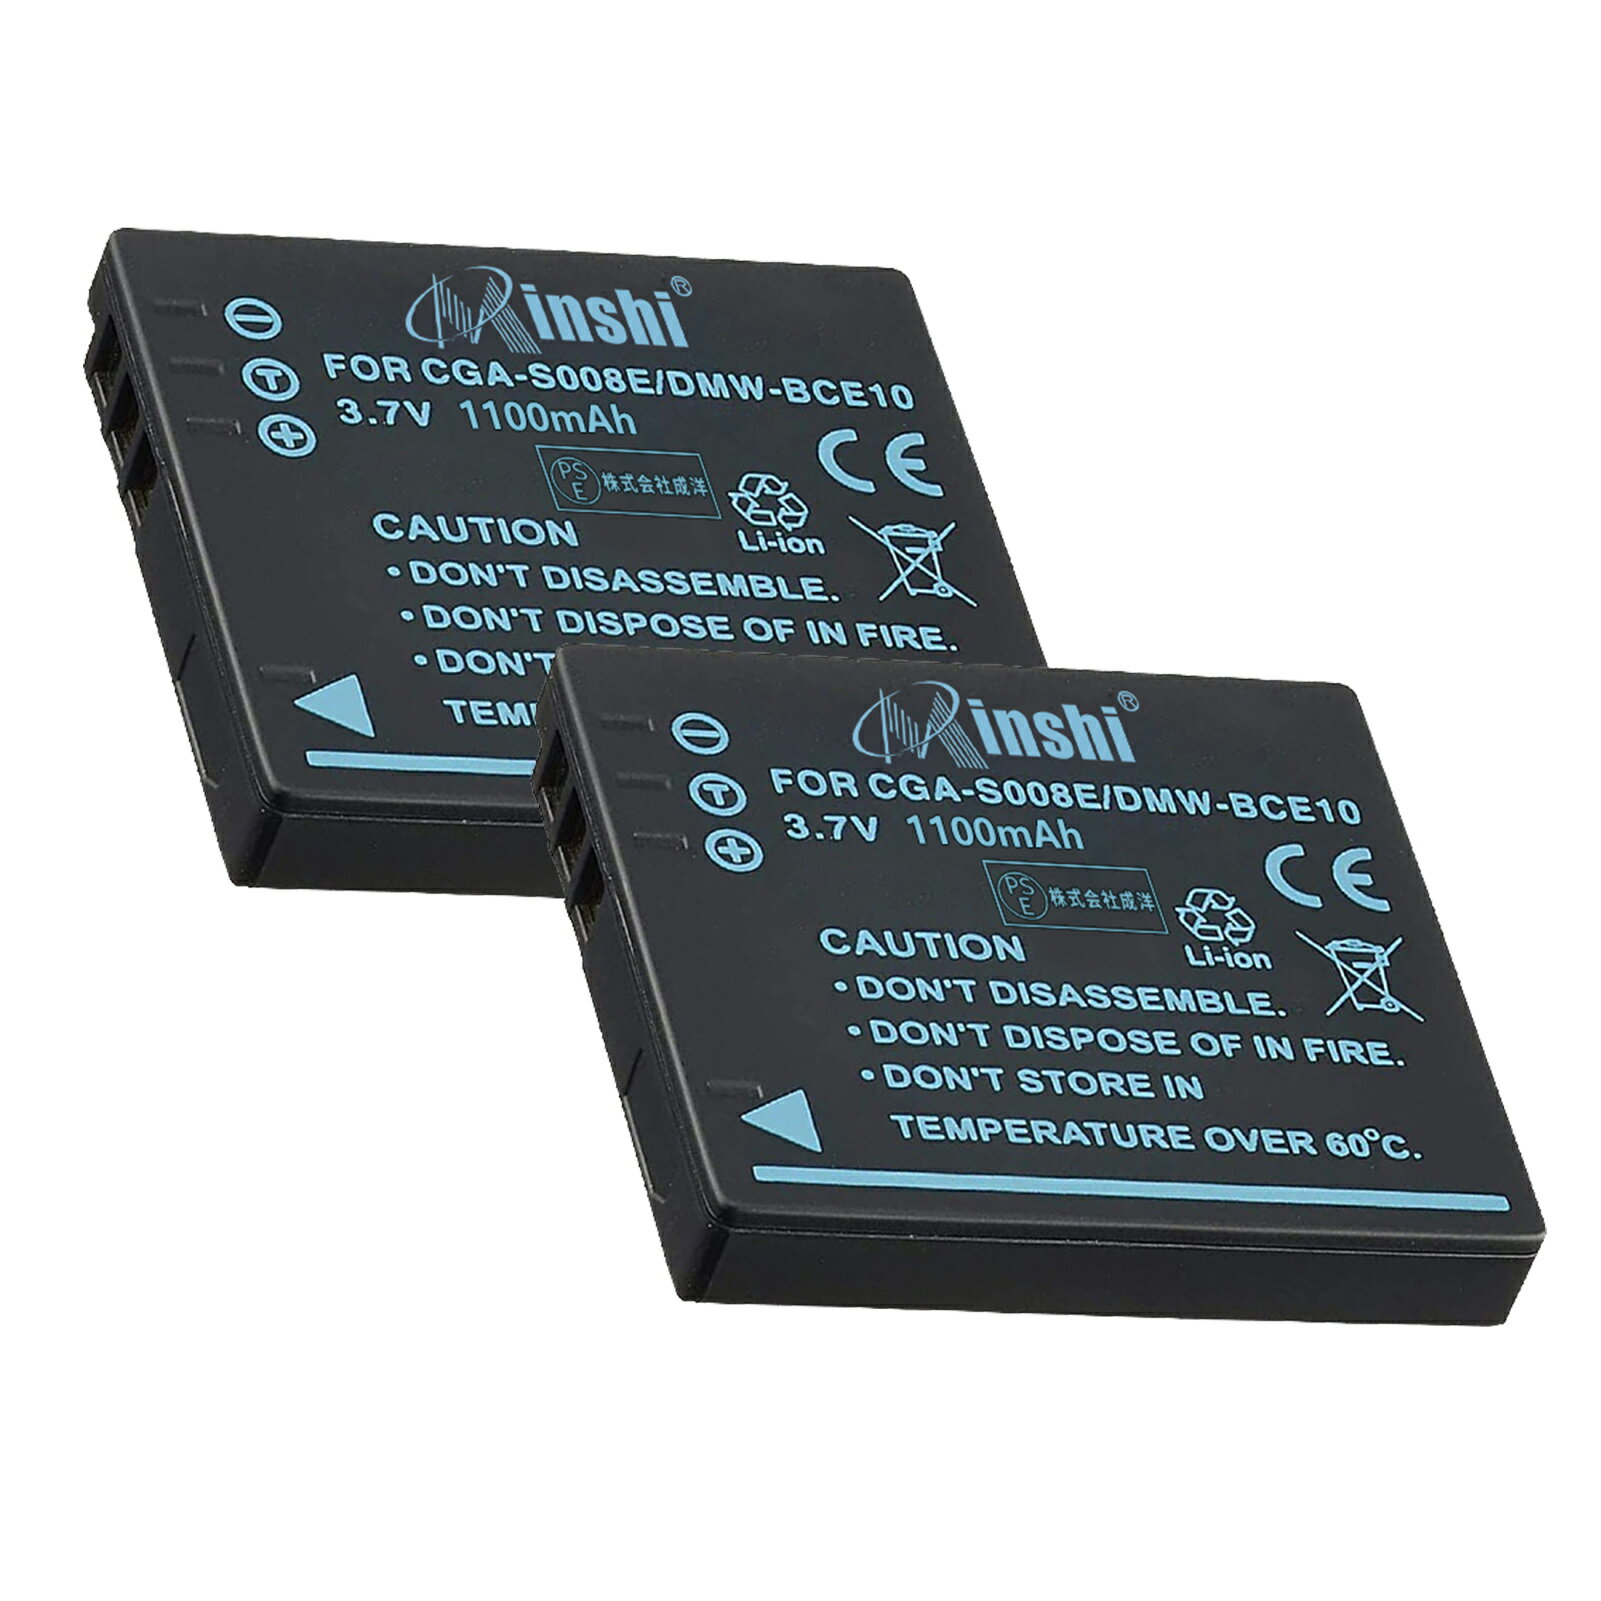 【2個セット】minshi 新品 Panasonic DMC-FX30 互換バッテリー 1100mAh 高品質交換用リチャージブル カメラバッテリー リチウムイオンバッテリー DMW-BCE10 / VW-VBJ10 / DB-70 / DMW-BCE10E 充電池 PSE認証 1年間保証 予備バッテリー